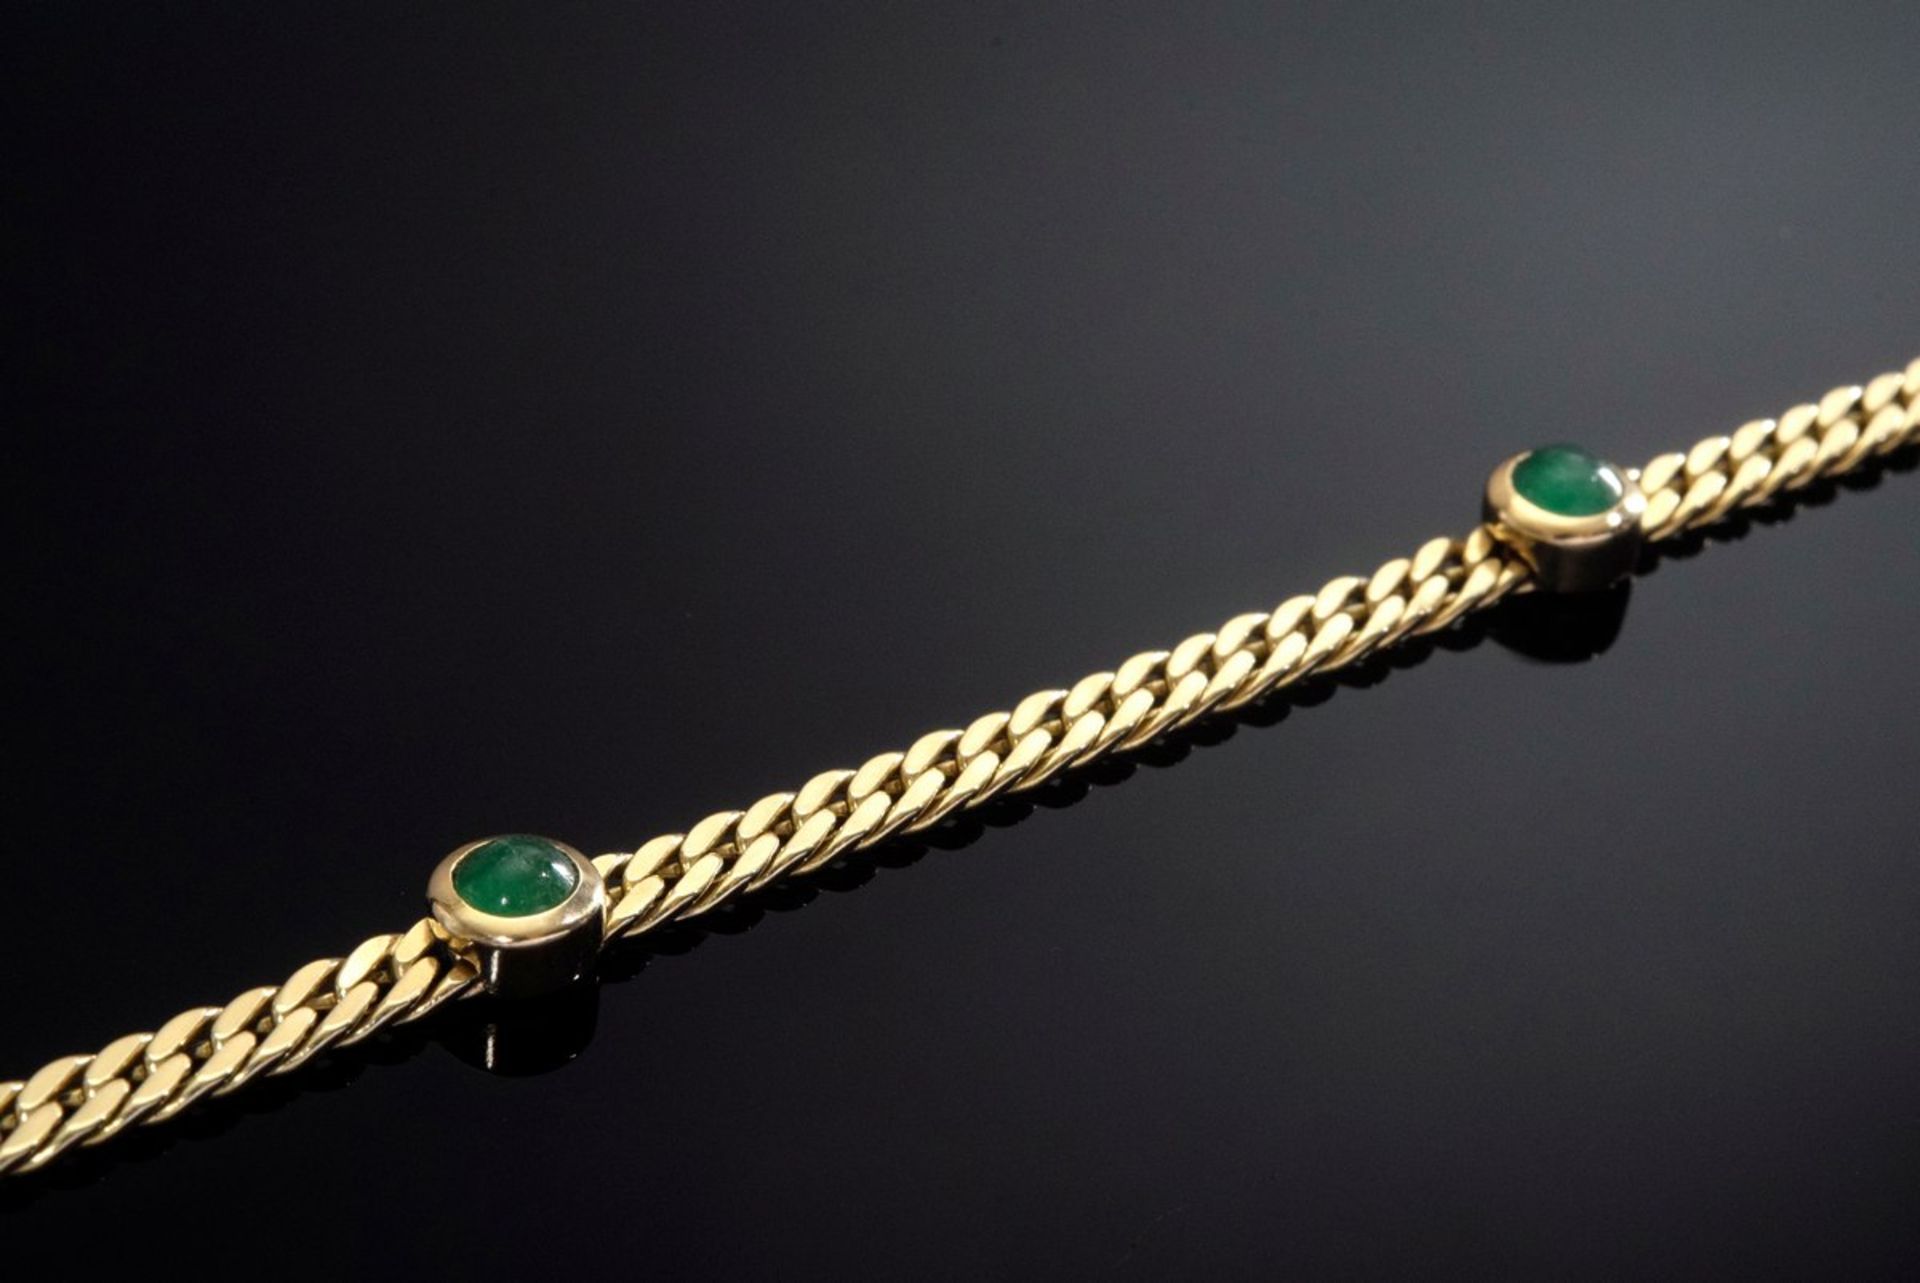 Zartes GG 585 Flachpanzerarmband mit 5 runden Smaragdcabochons (zus. ca. 1ct), 12g, L. 21,5cm, - Image 3 of 3